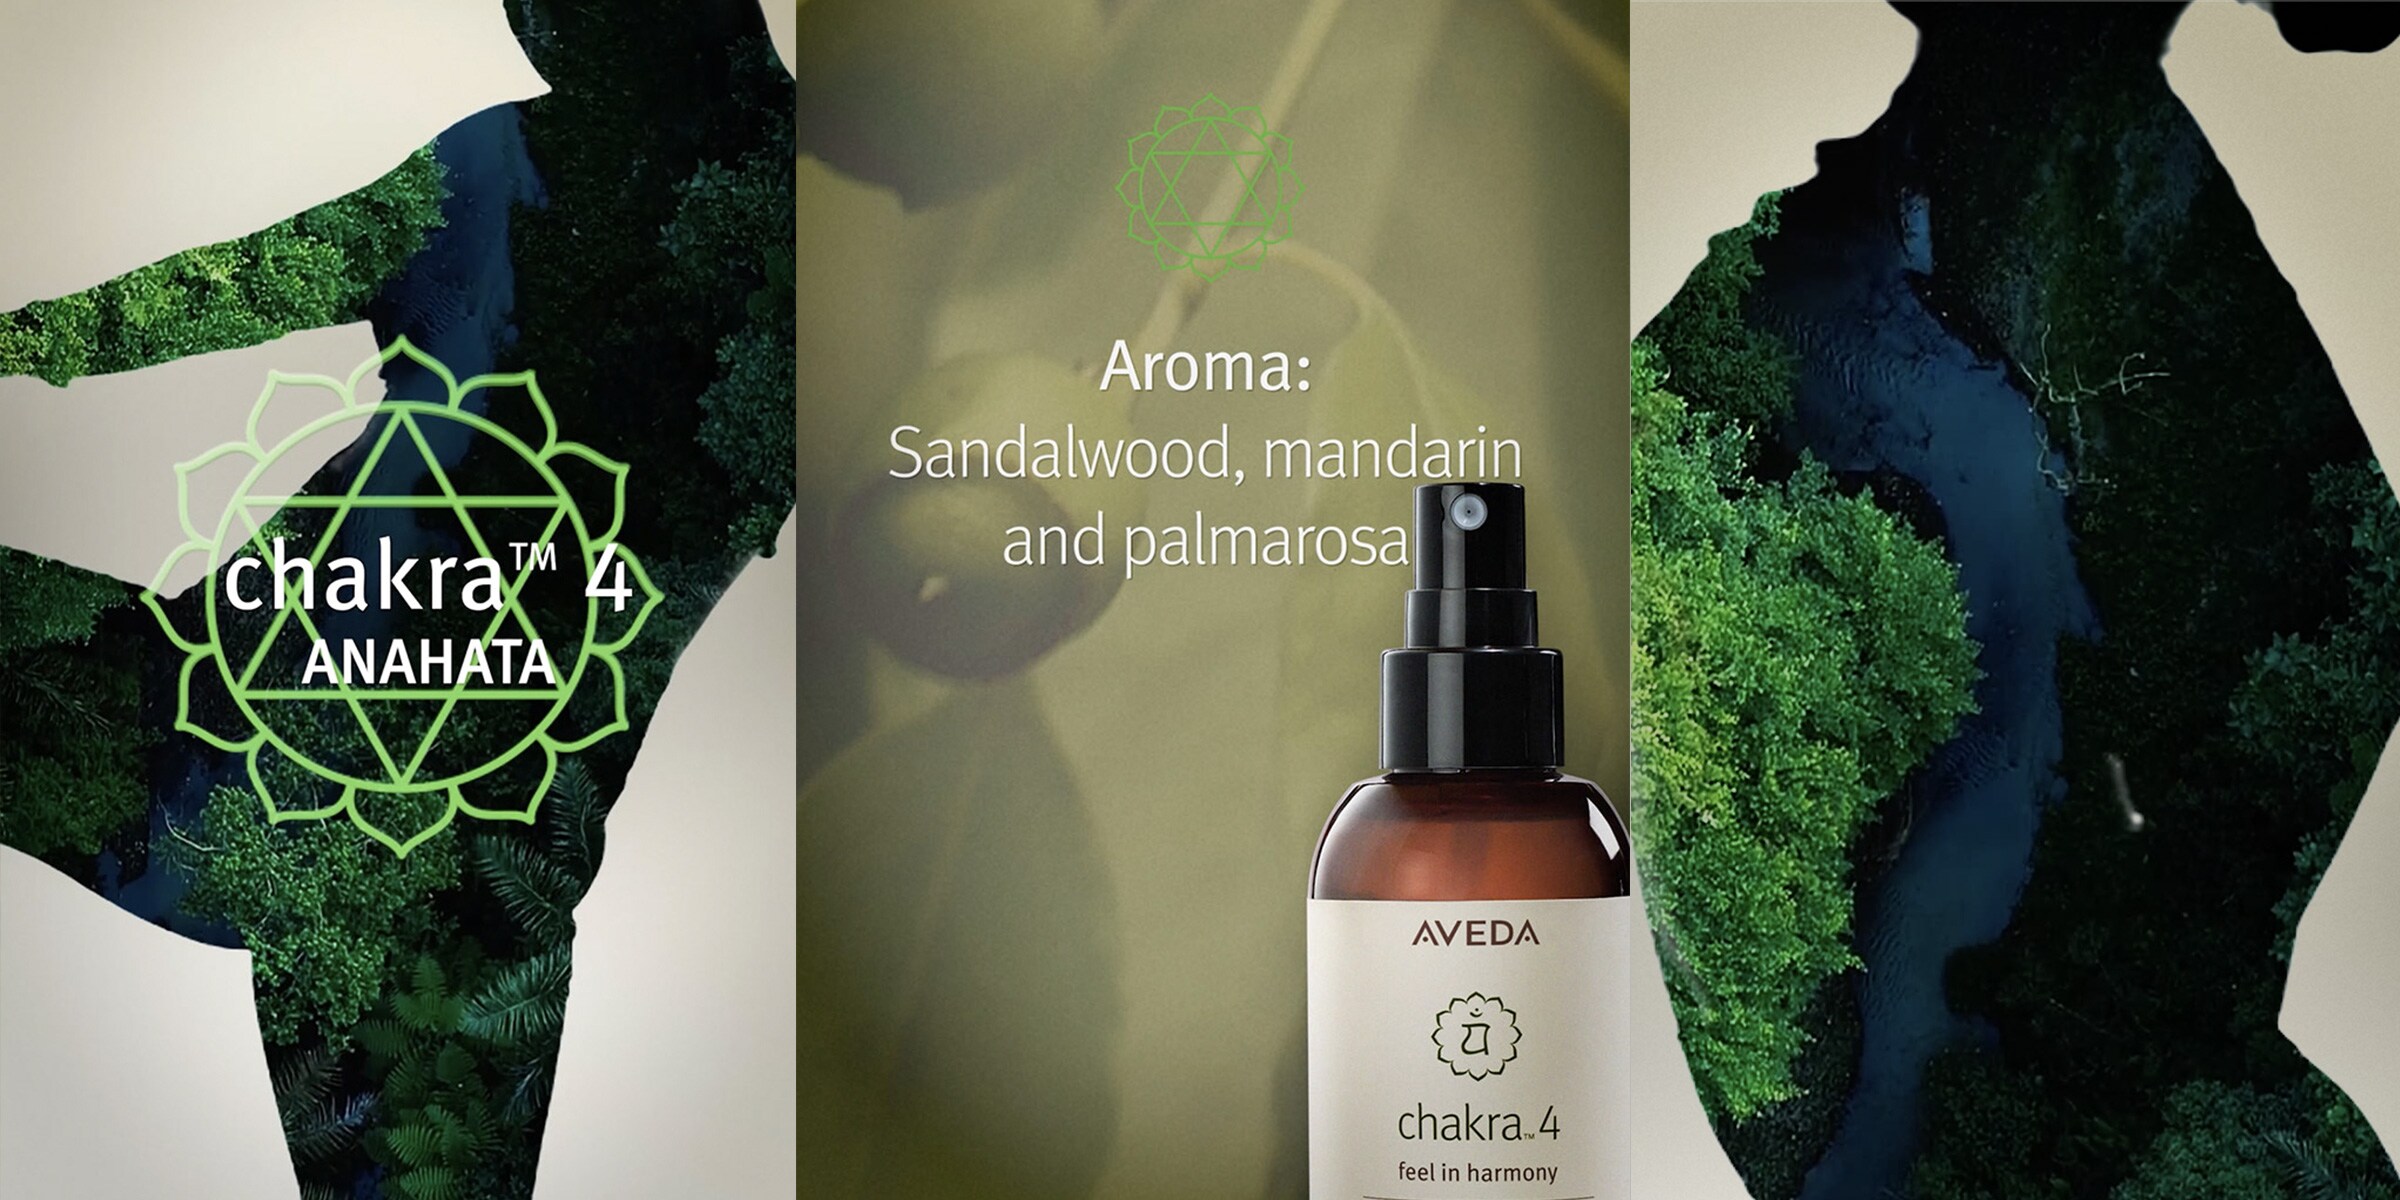 Das Aroma von Chakra 4 umfasst Sandelholz, Mandarine und Palmarosa